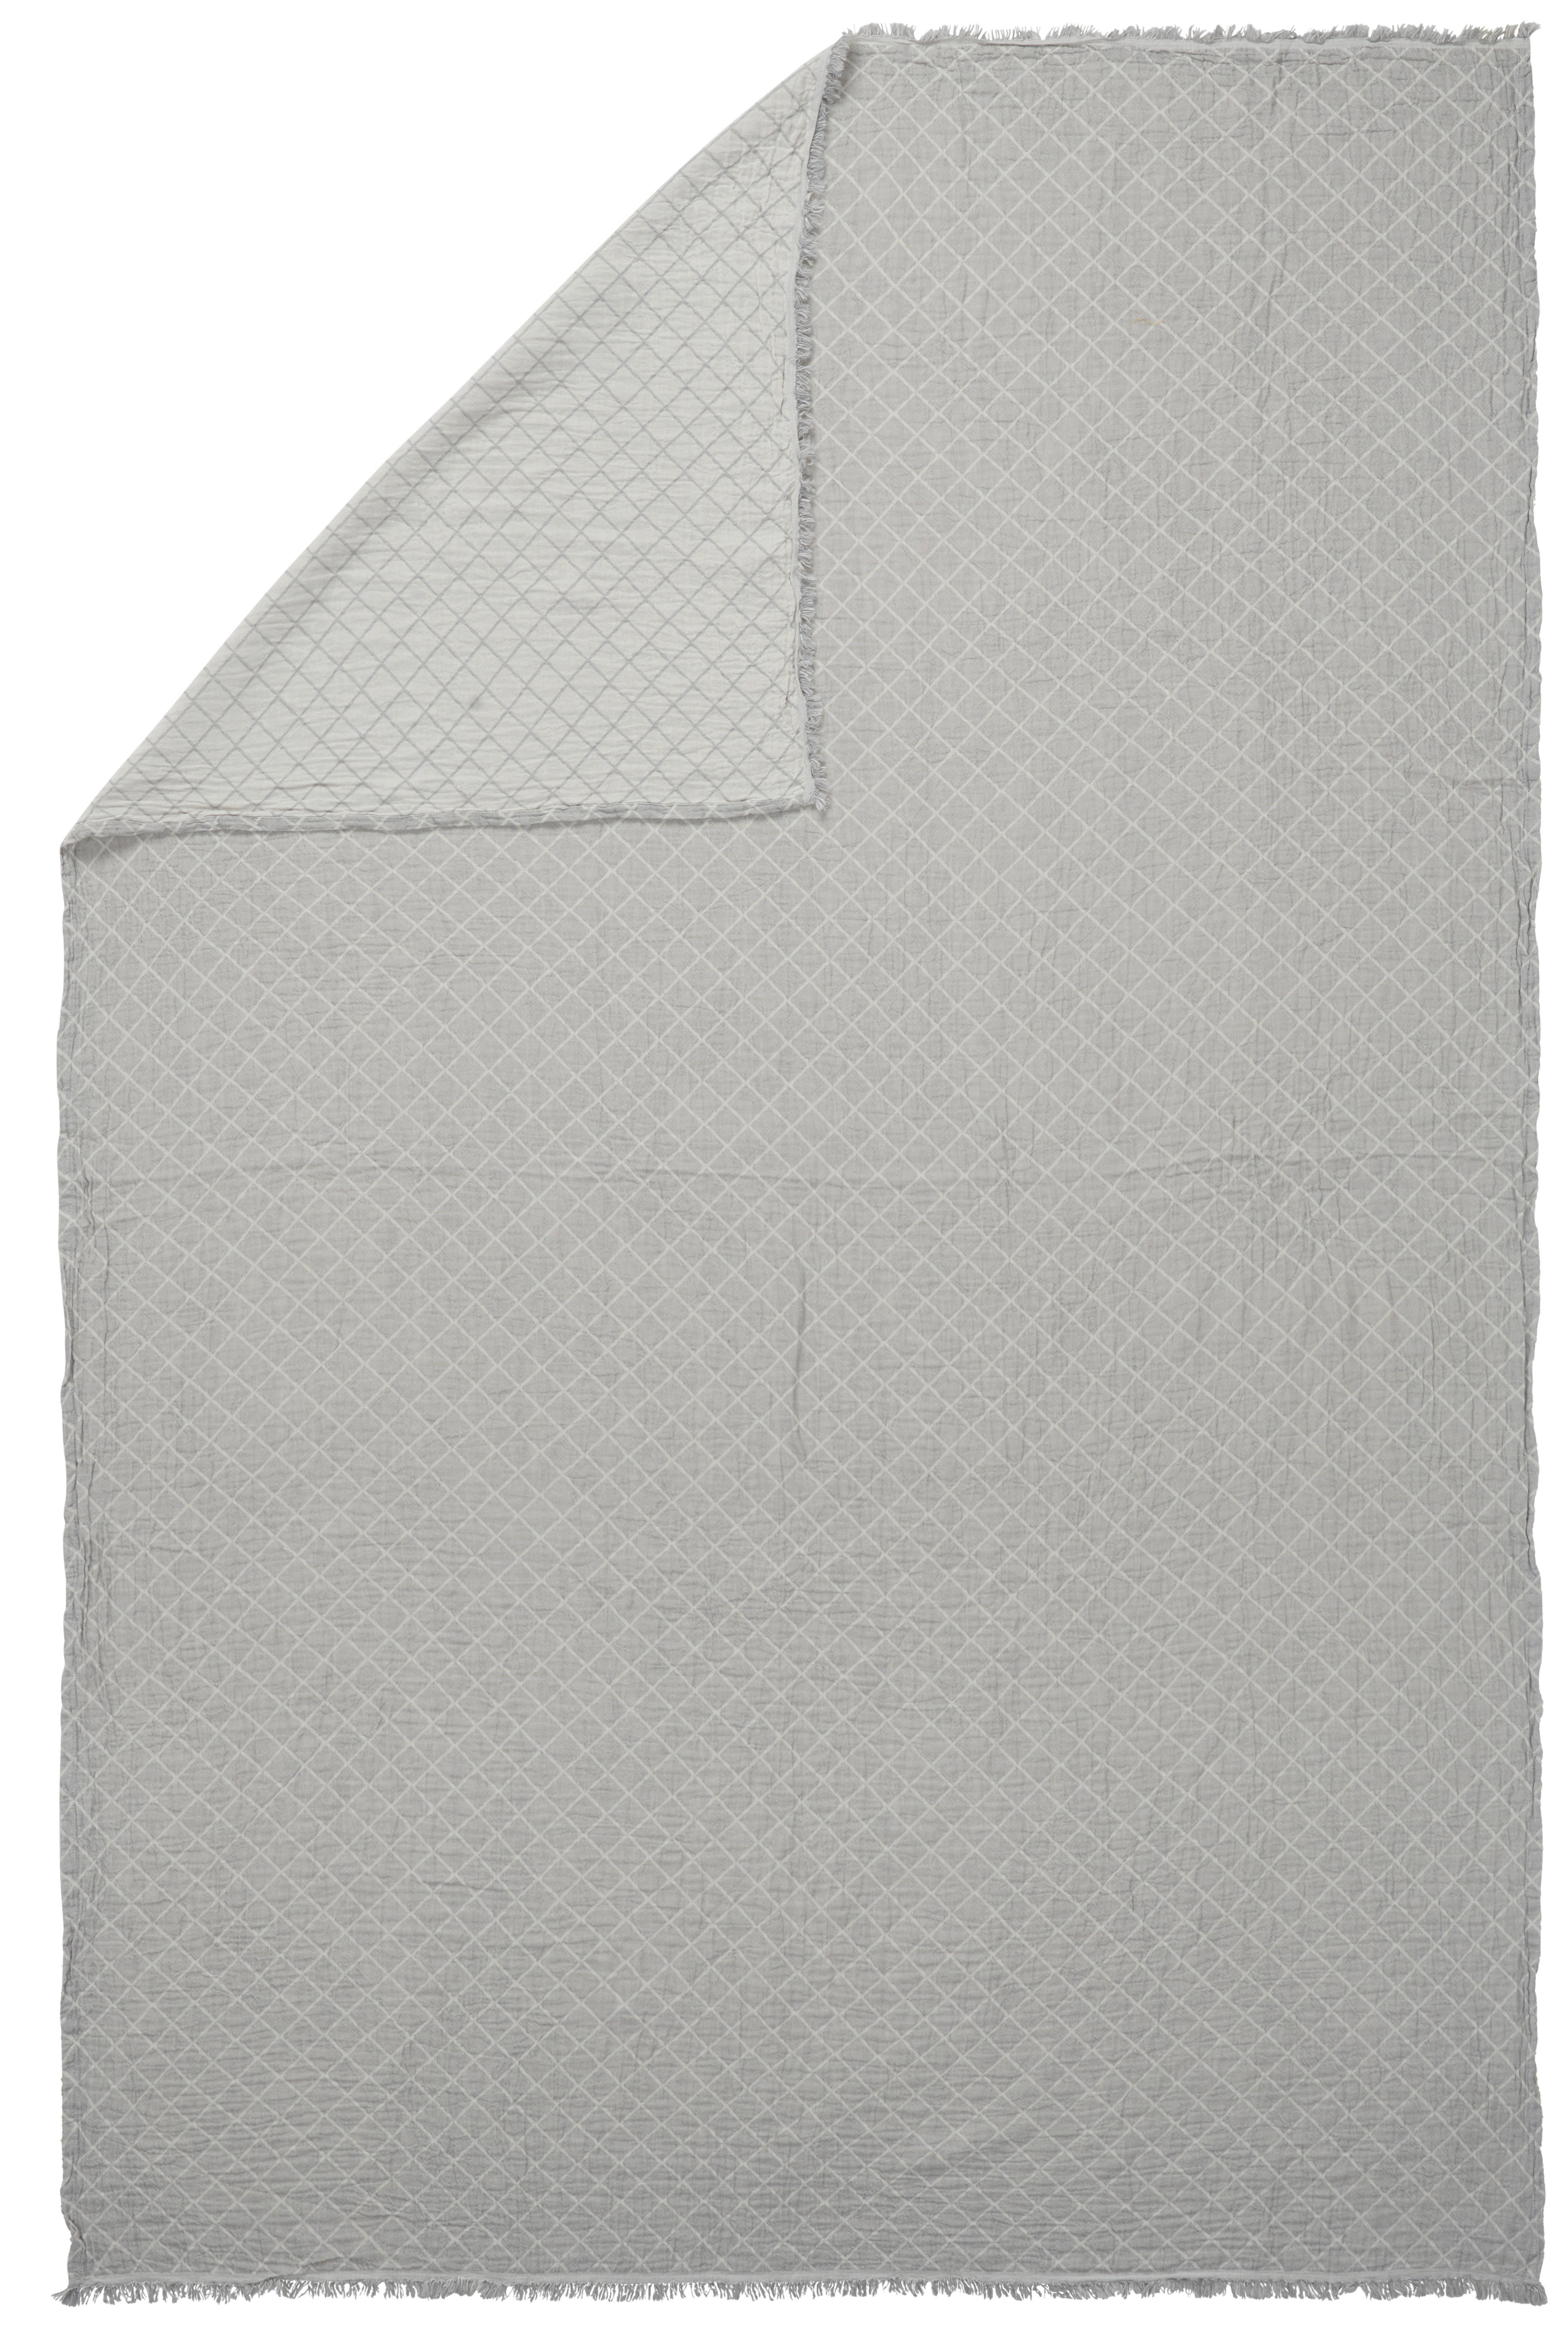 WOHNDECKE Musa 150/200 cm  - Naturfarben/Grau, KONVENTIONELL, Textil (150/200cm) - Ambiente